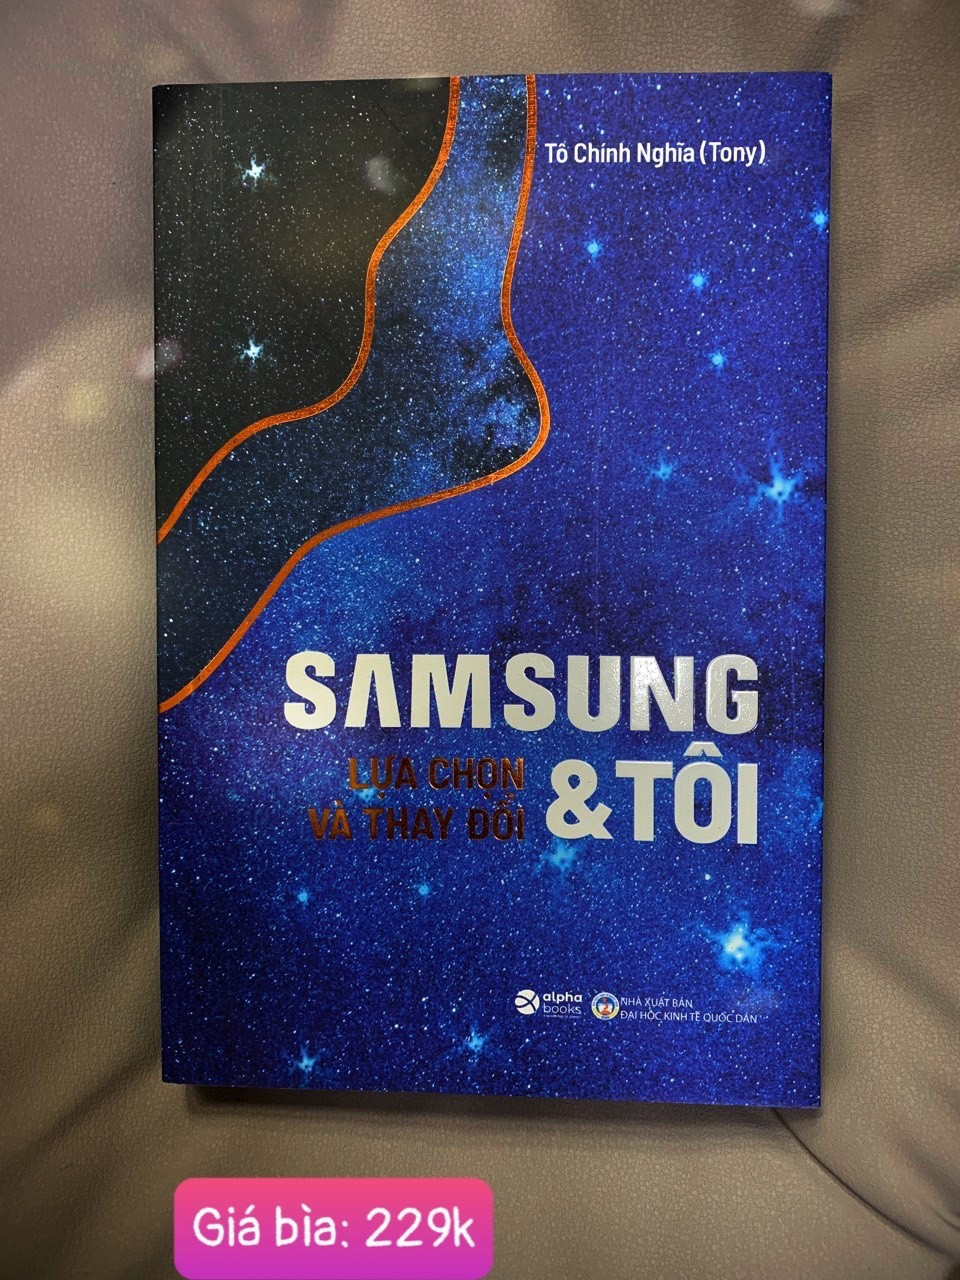 Samsung & Tôi - Lựa Chọn Và Thay Đổi - Tô Chính Nghĩa (Tony) - (bìa mềm)